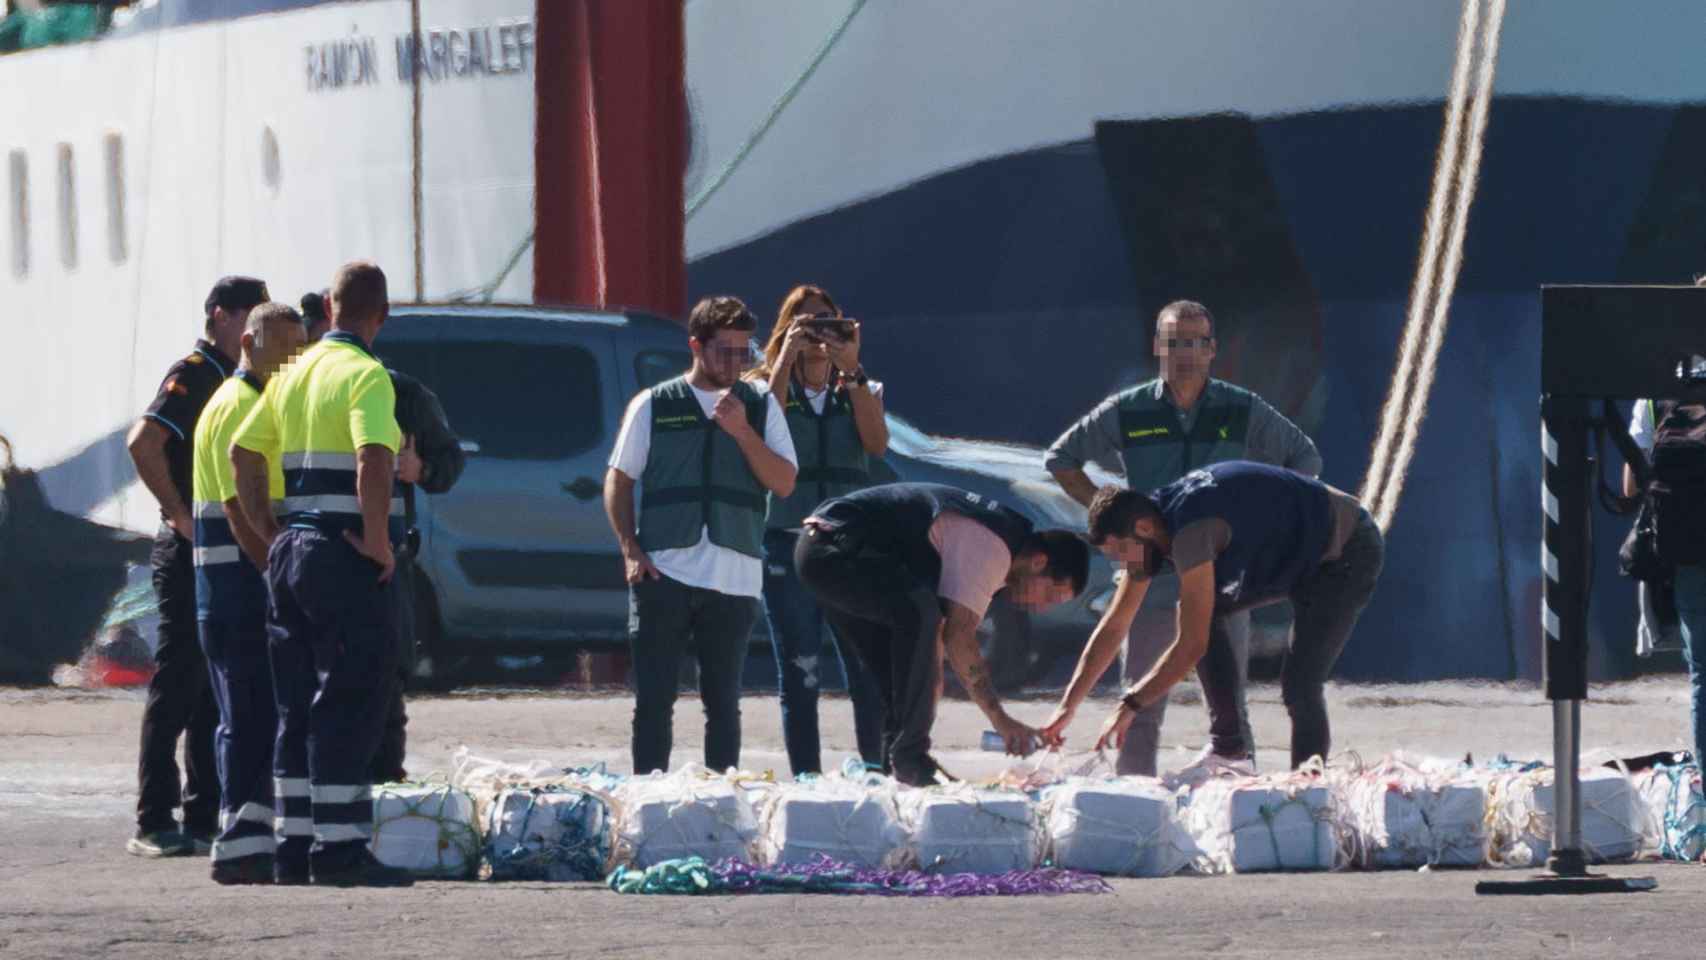 Llegada al puerto de Tenerife de la cocaína tras la incautación de un barco con 2.500 kilos a bordo.